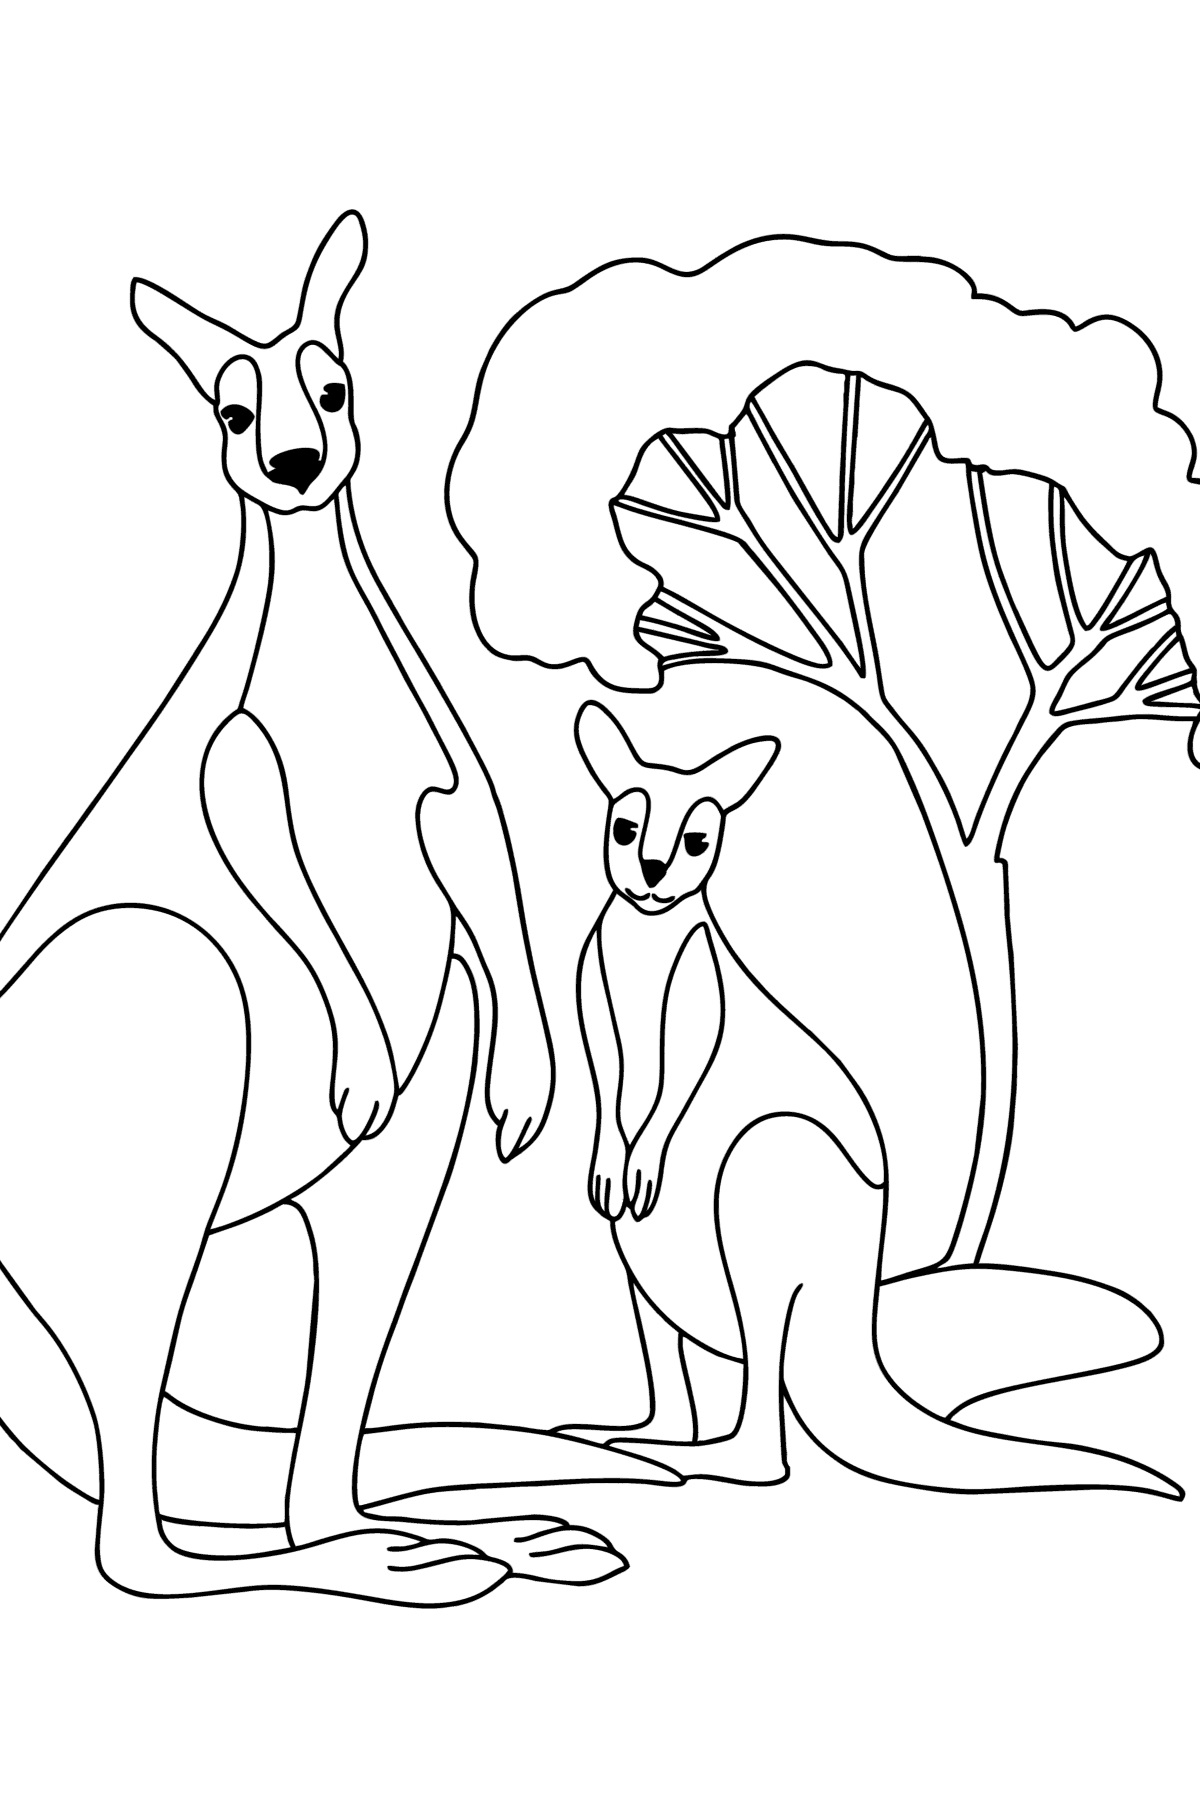 Boyama sayfası bebek ile kanguru - Boyamalar çocuklar için